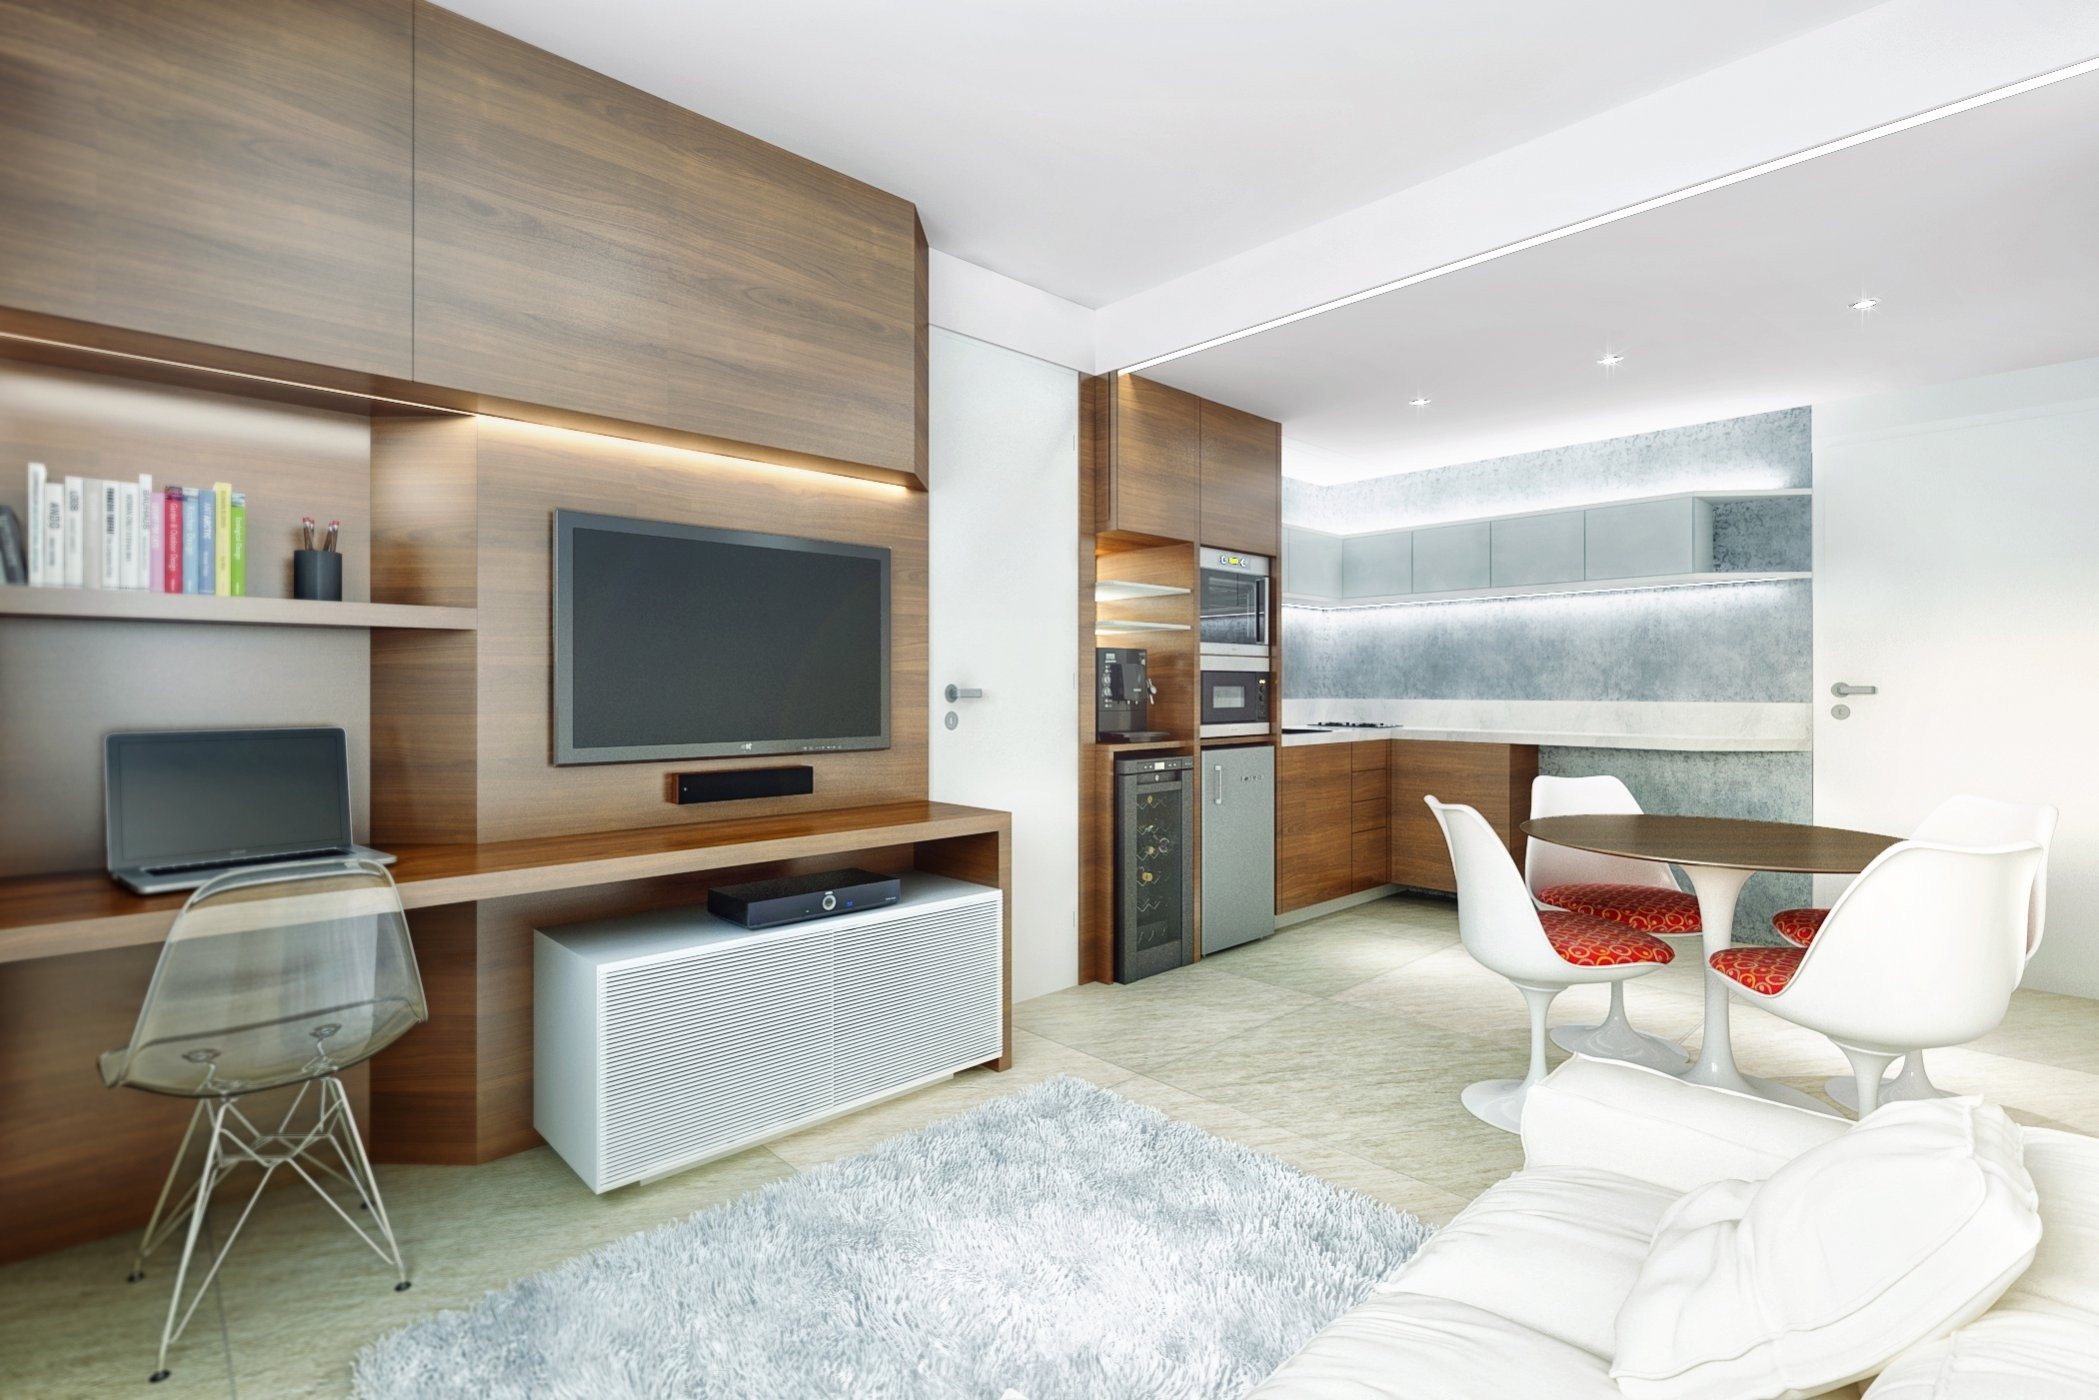 gambar ruang tamu minimalis ukuran kecil - desain rumah modern